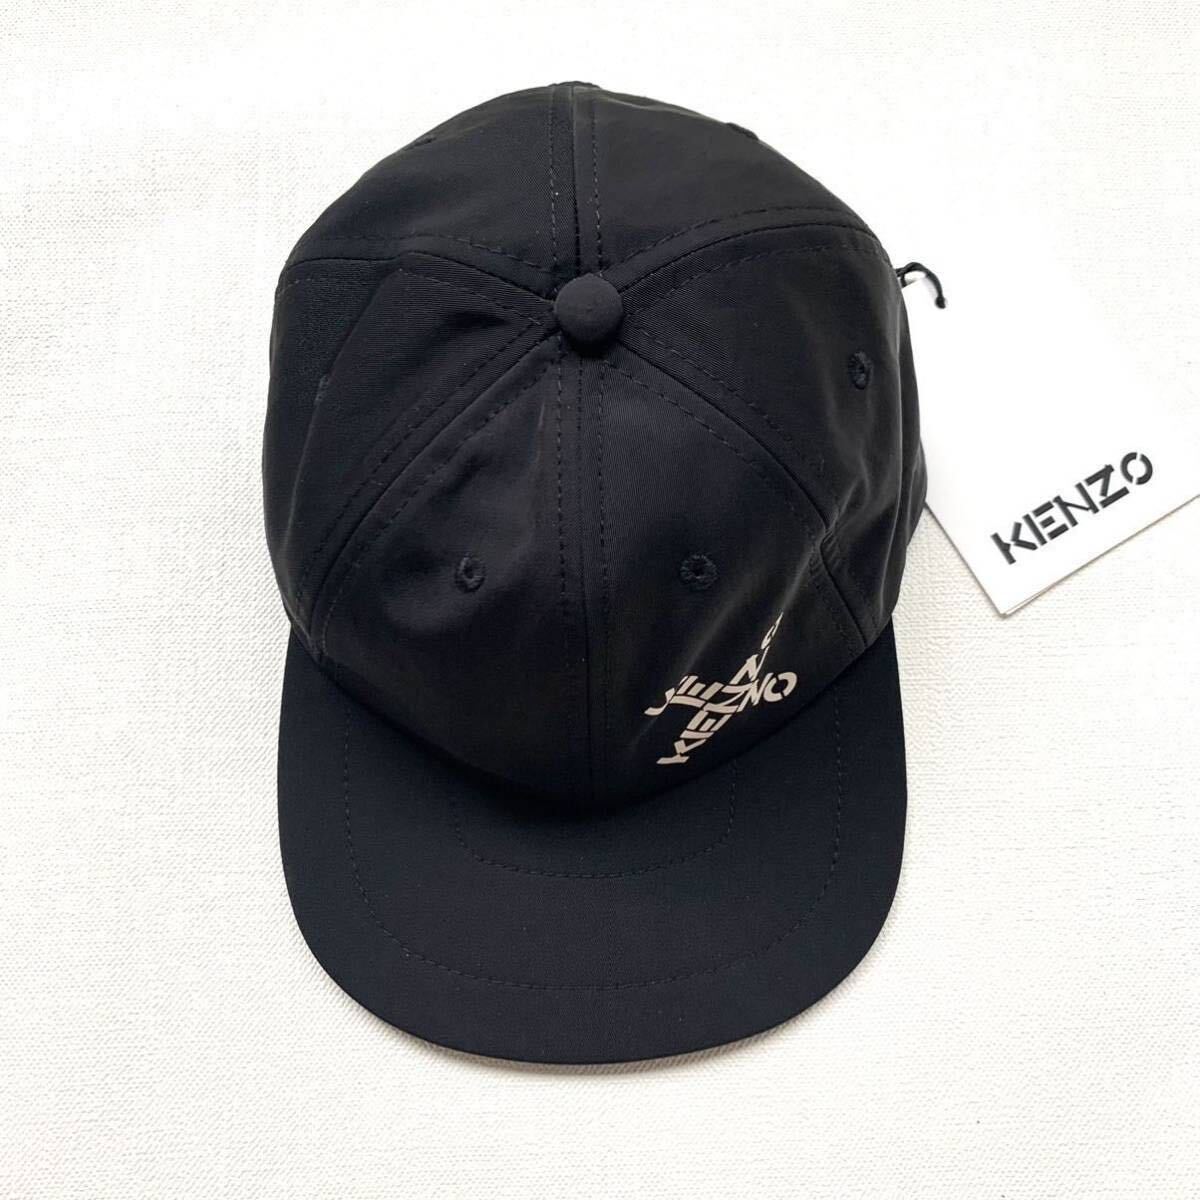 新品 KENZO ケンゾー Little X SPORT CAP 6panelロゴ キャップ ベースボールキャップ 帽子 メンズ 黒 ブラック 収納袋付 送料無料_画像4